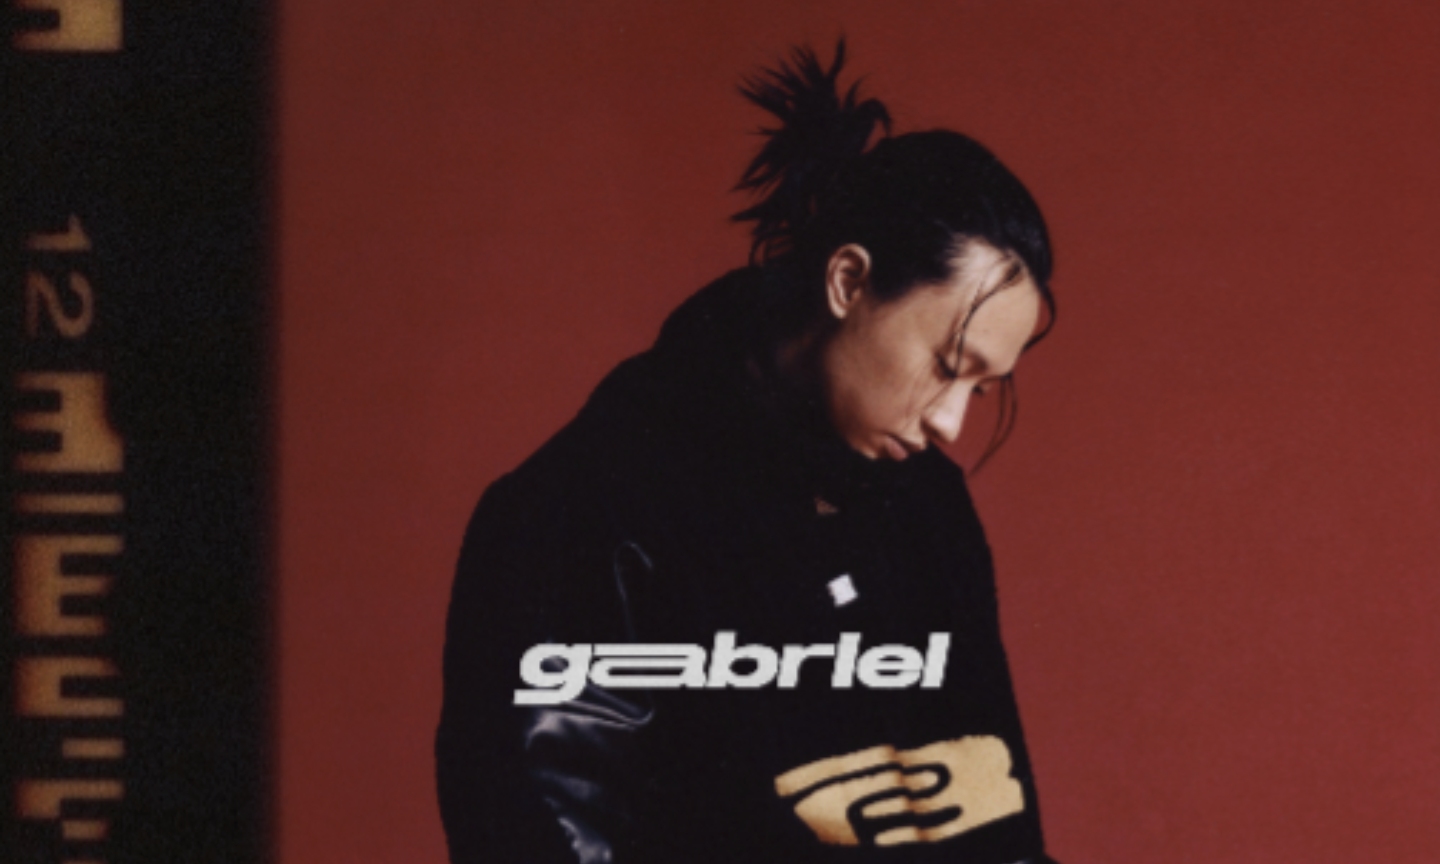 Keshi Shares New Single ‘Get It,’ Announces Debut Album ‘Gabriel’